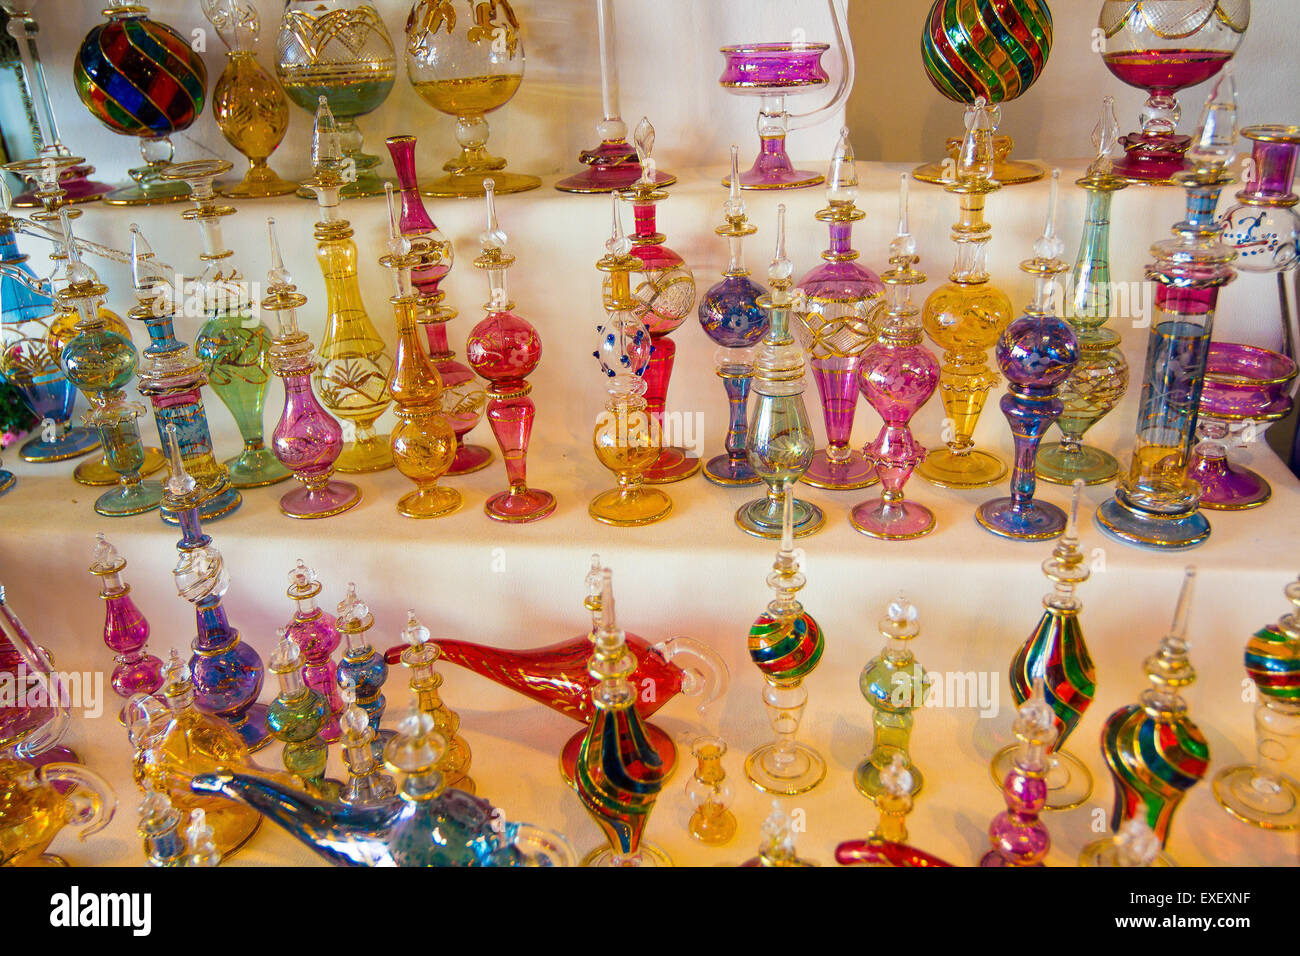 Ornements en verre et en céramique cuivre typiques arabes Banque D'Images